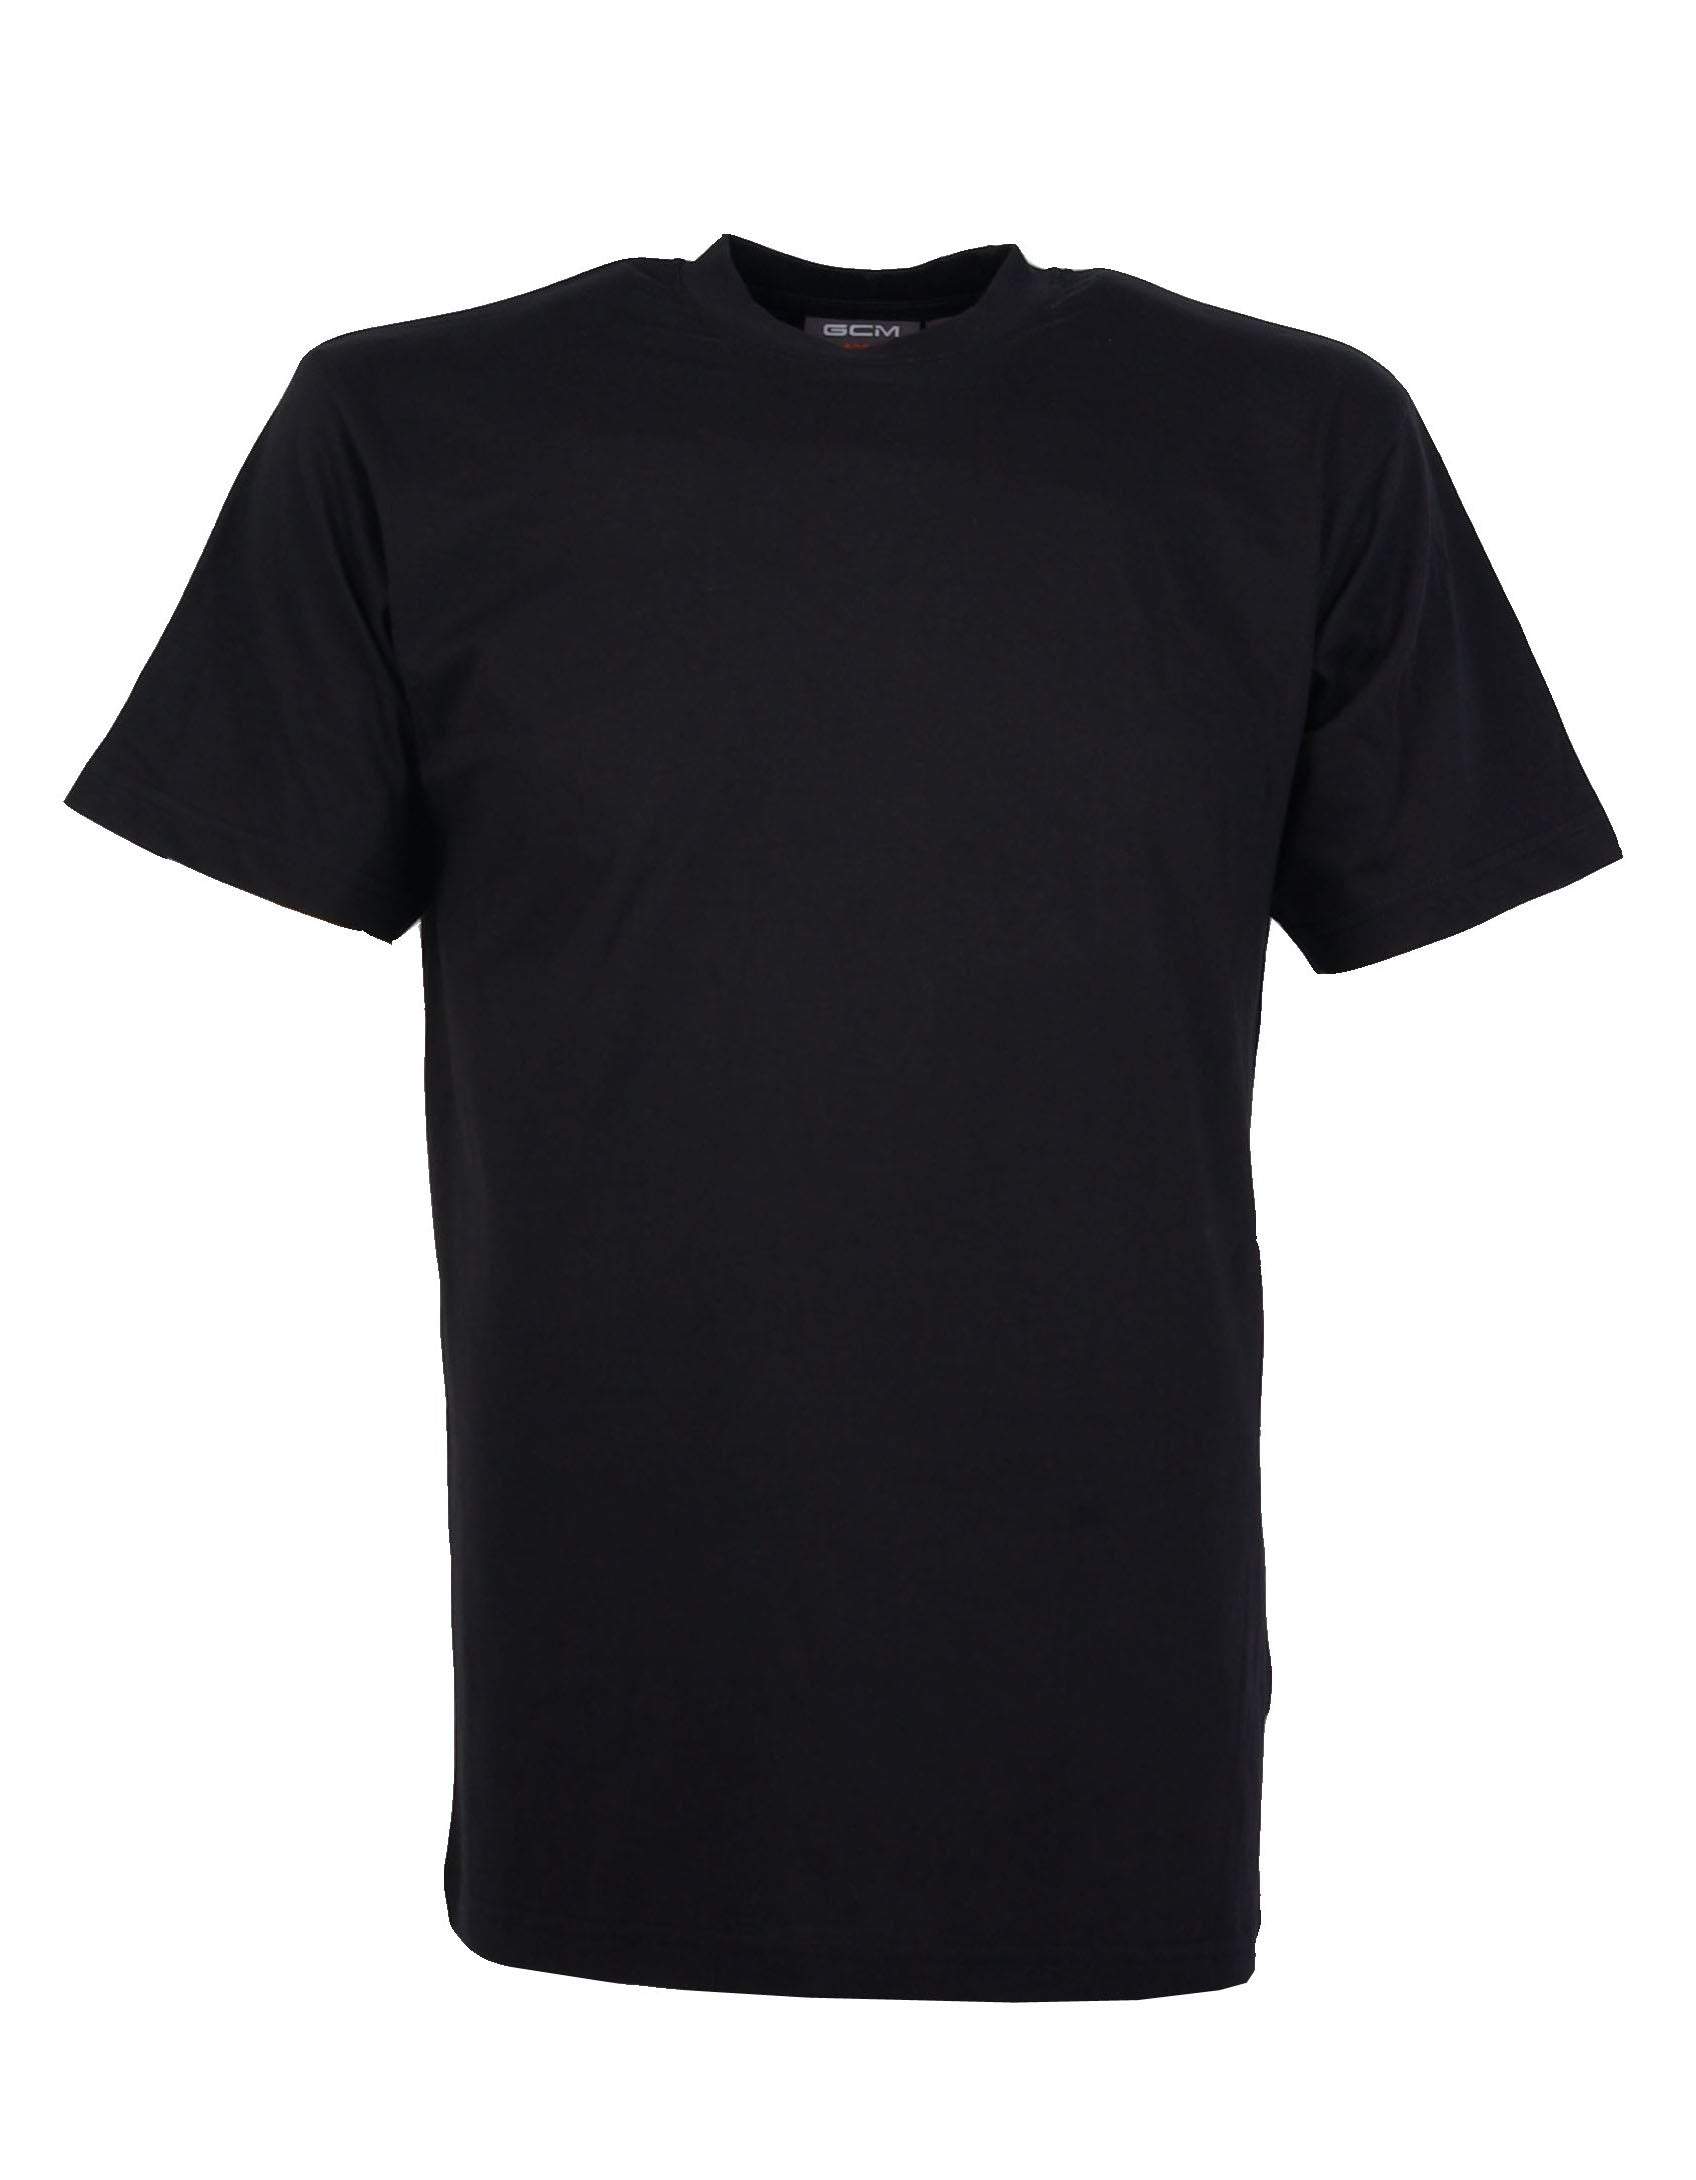 GCM original t-shirt ronde zwart Broeken